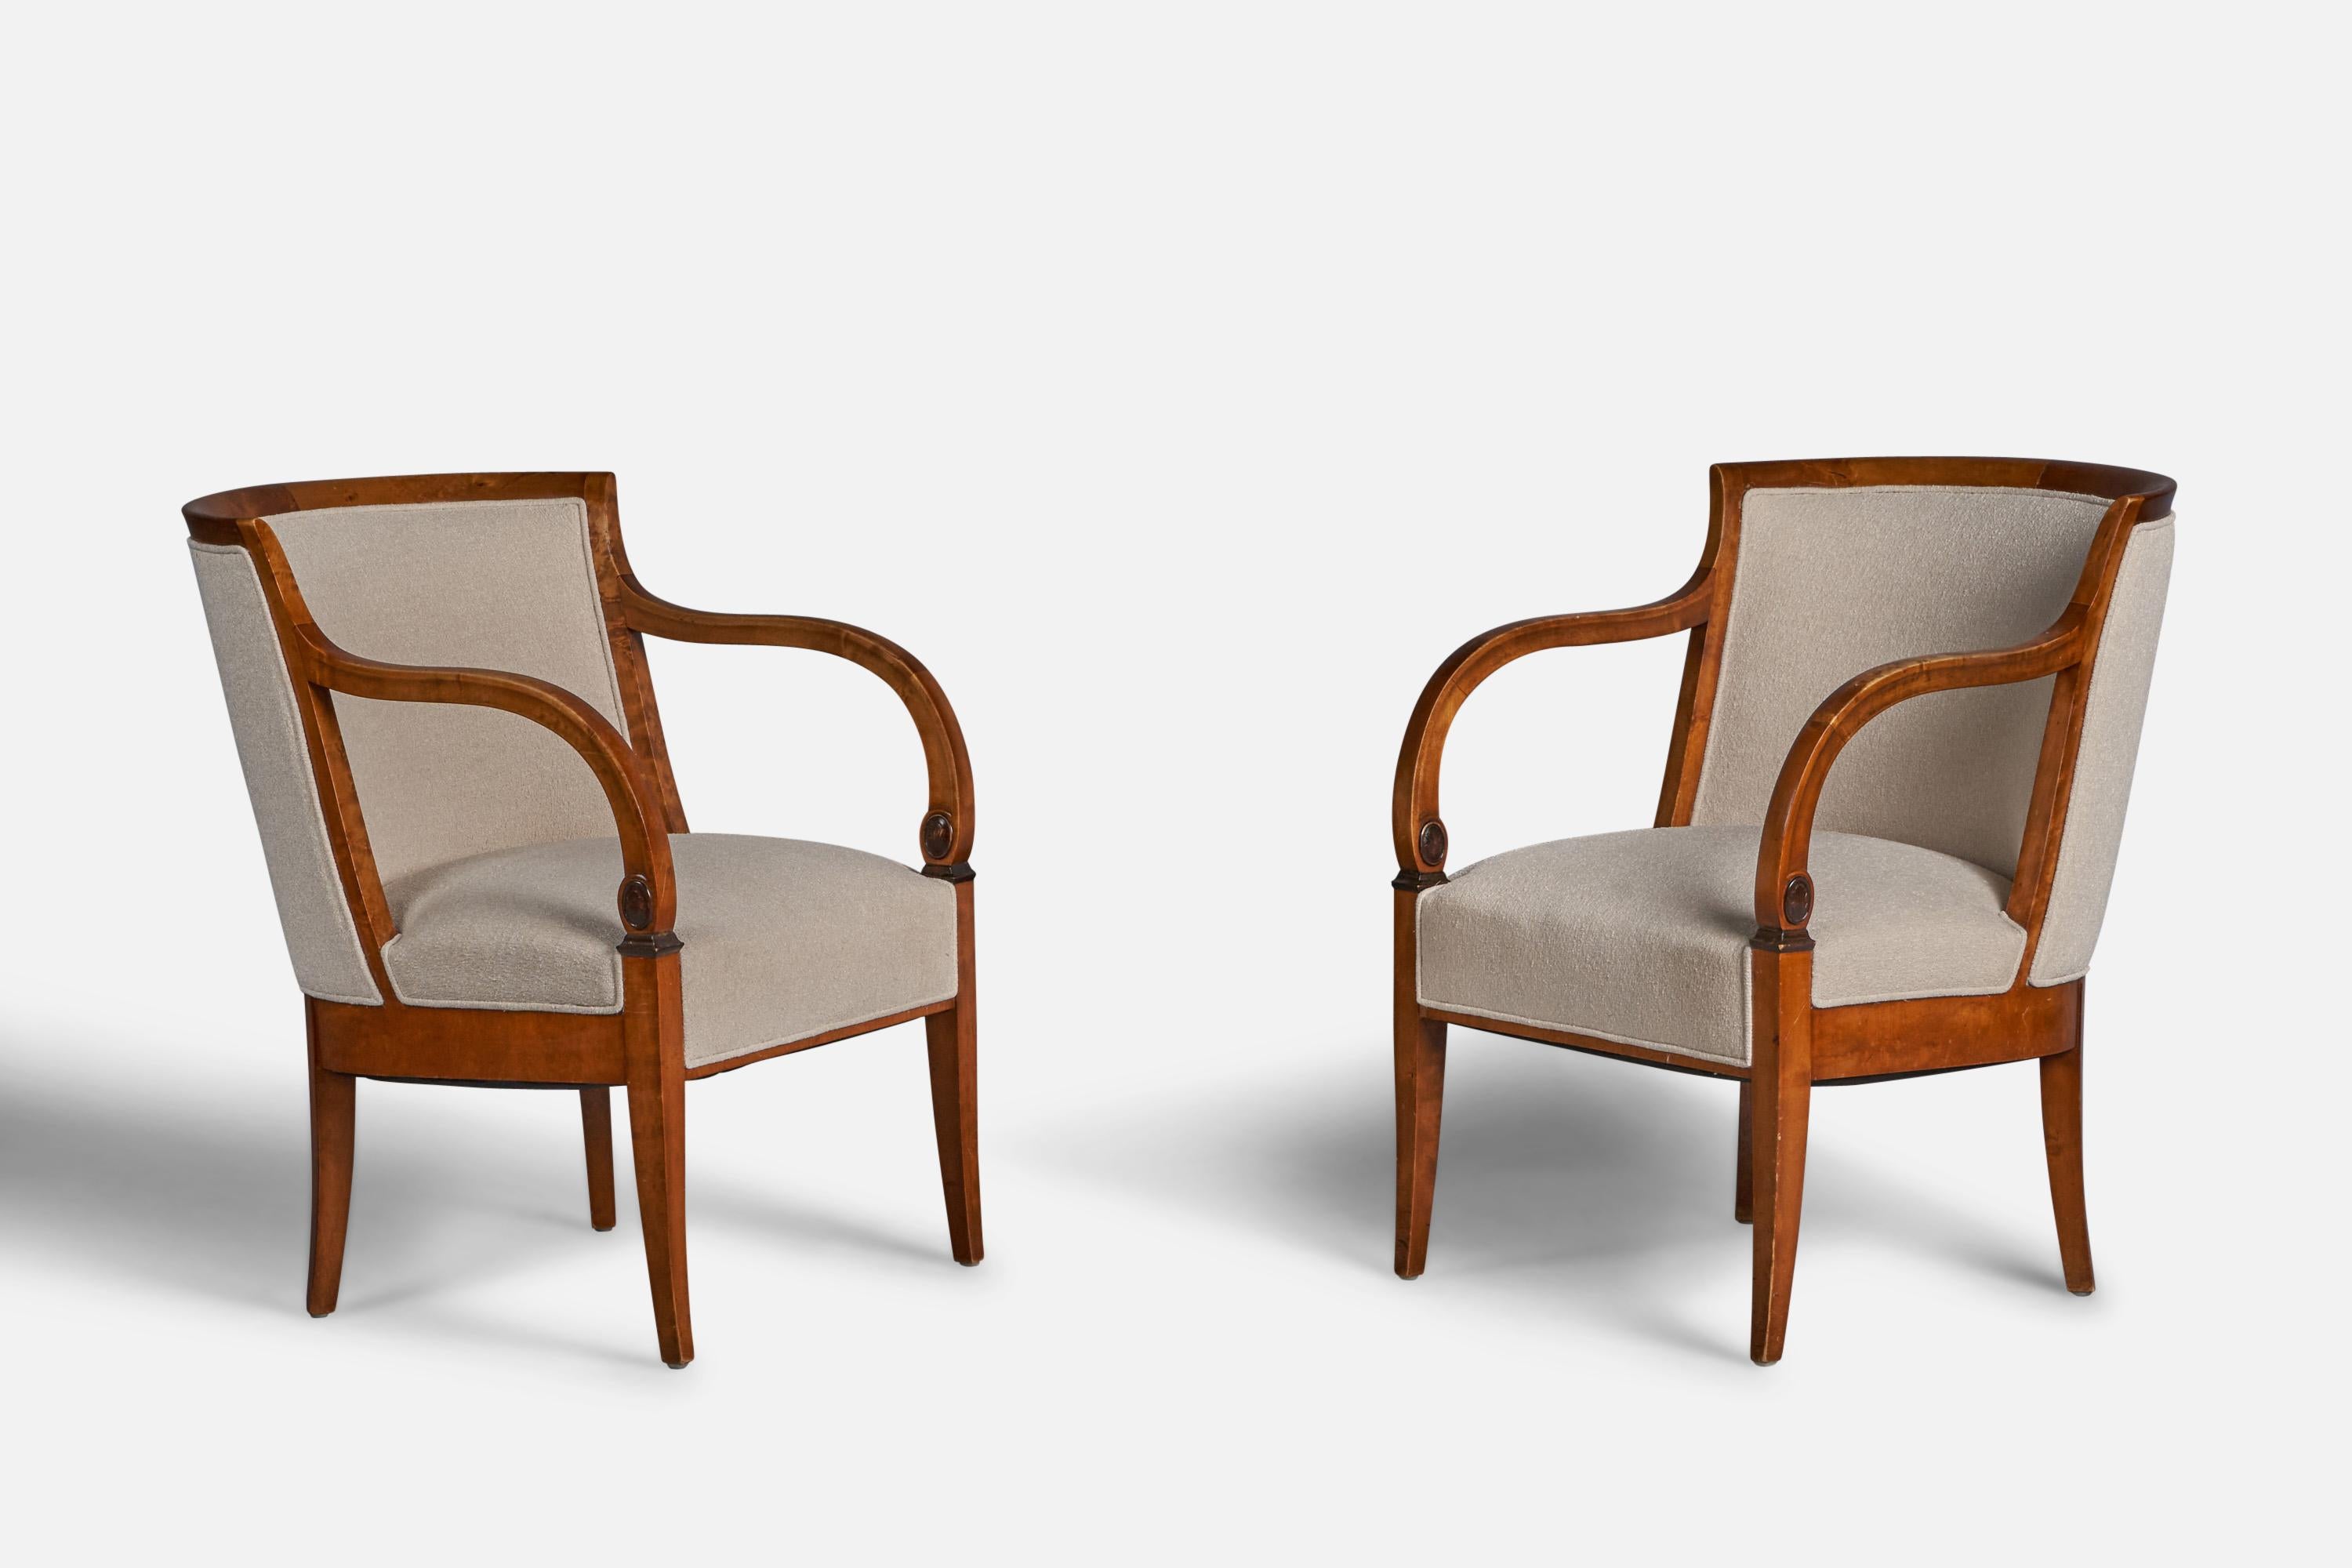 Ein Paar Sessel aus Birke und cremefarbenem Stoff, entworfen und hergestellt in Schweden, ca. 1920er Jahre.

18